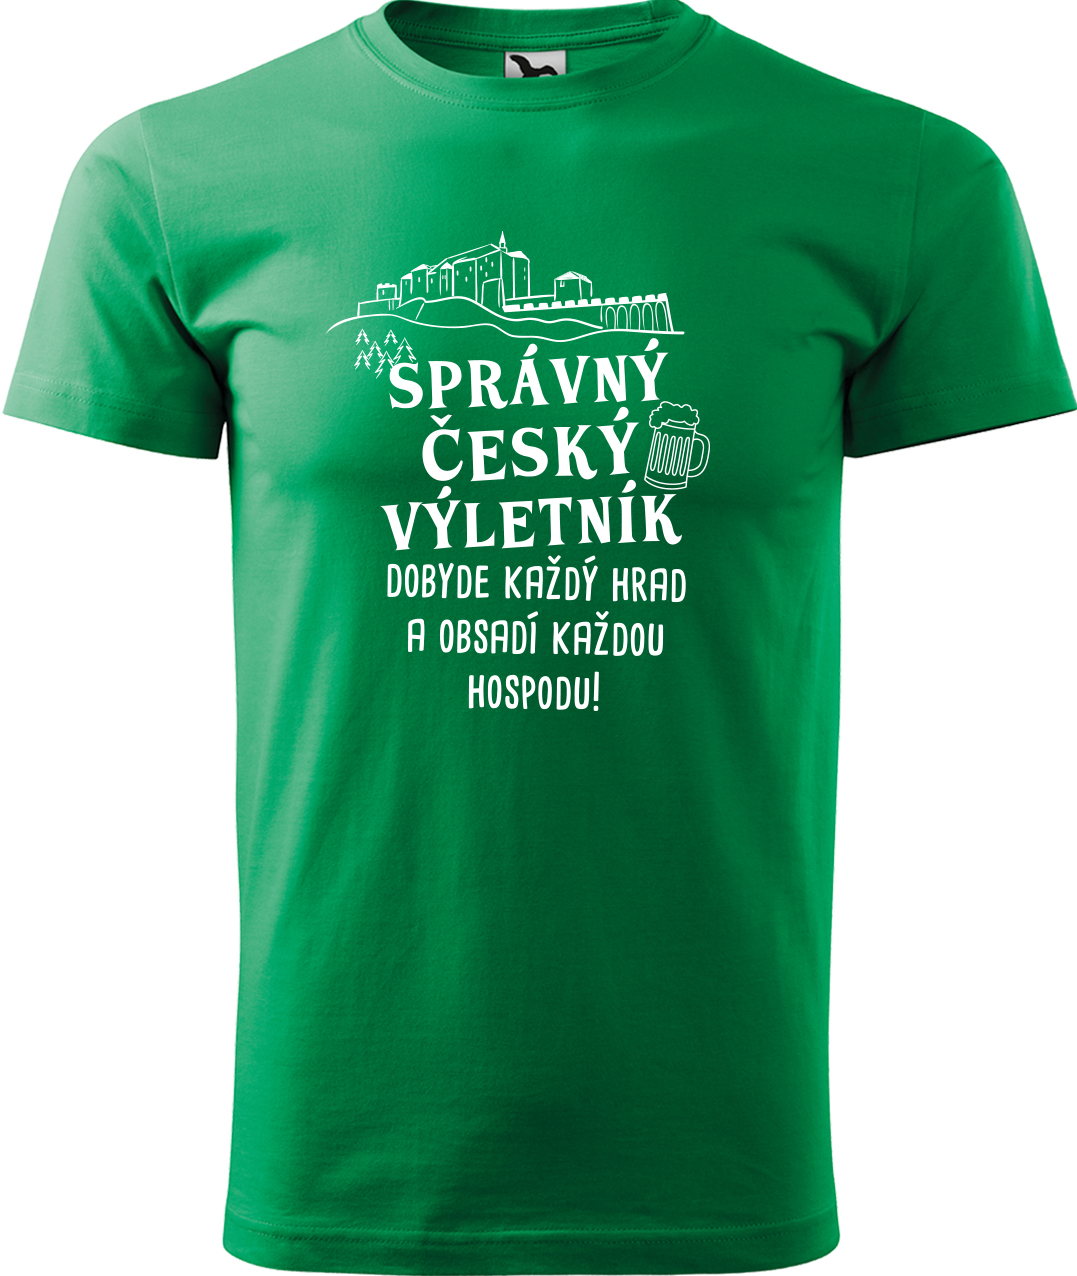 Pánské cestovatelské tričko - Správný český výletník Velikost: L, Barva: Středně zelená (16), Střih: pánský